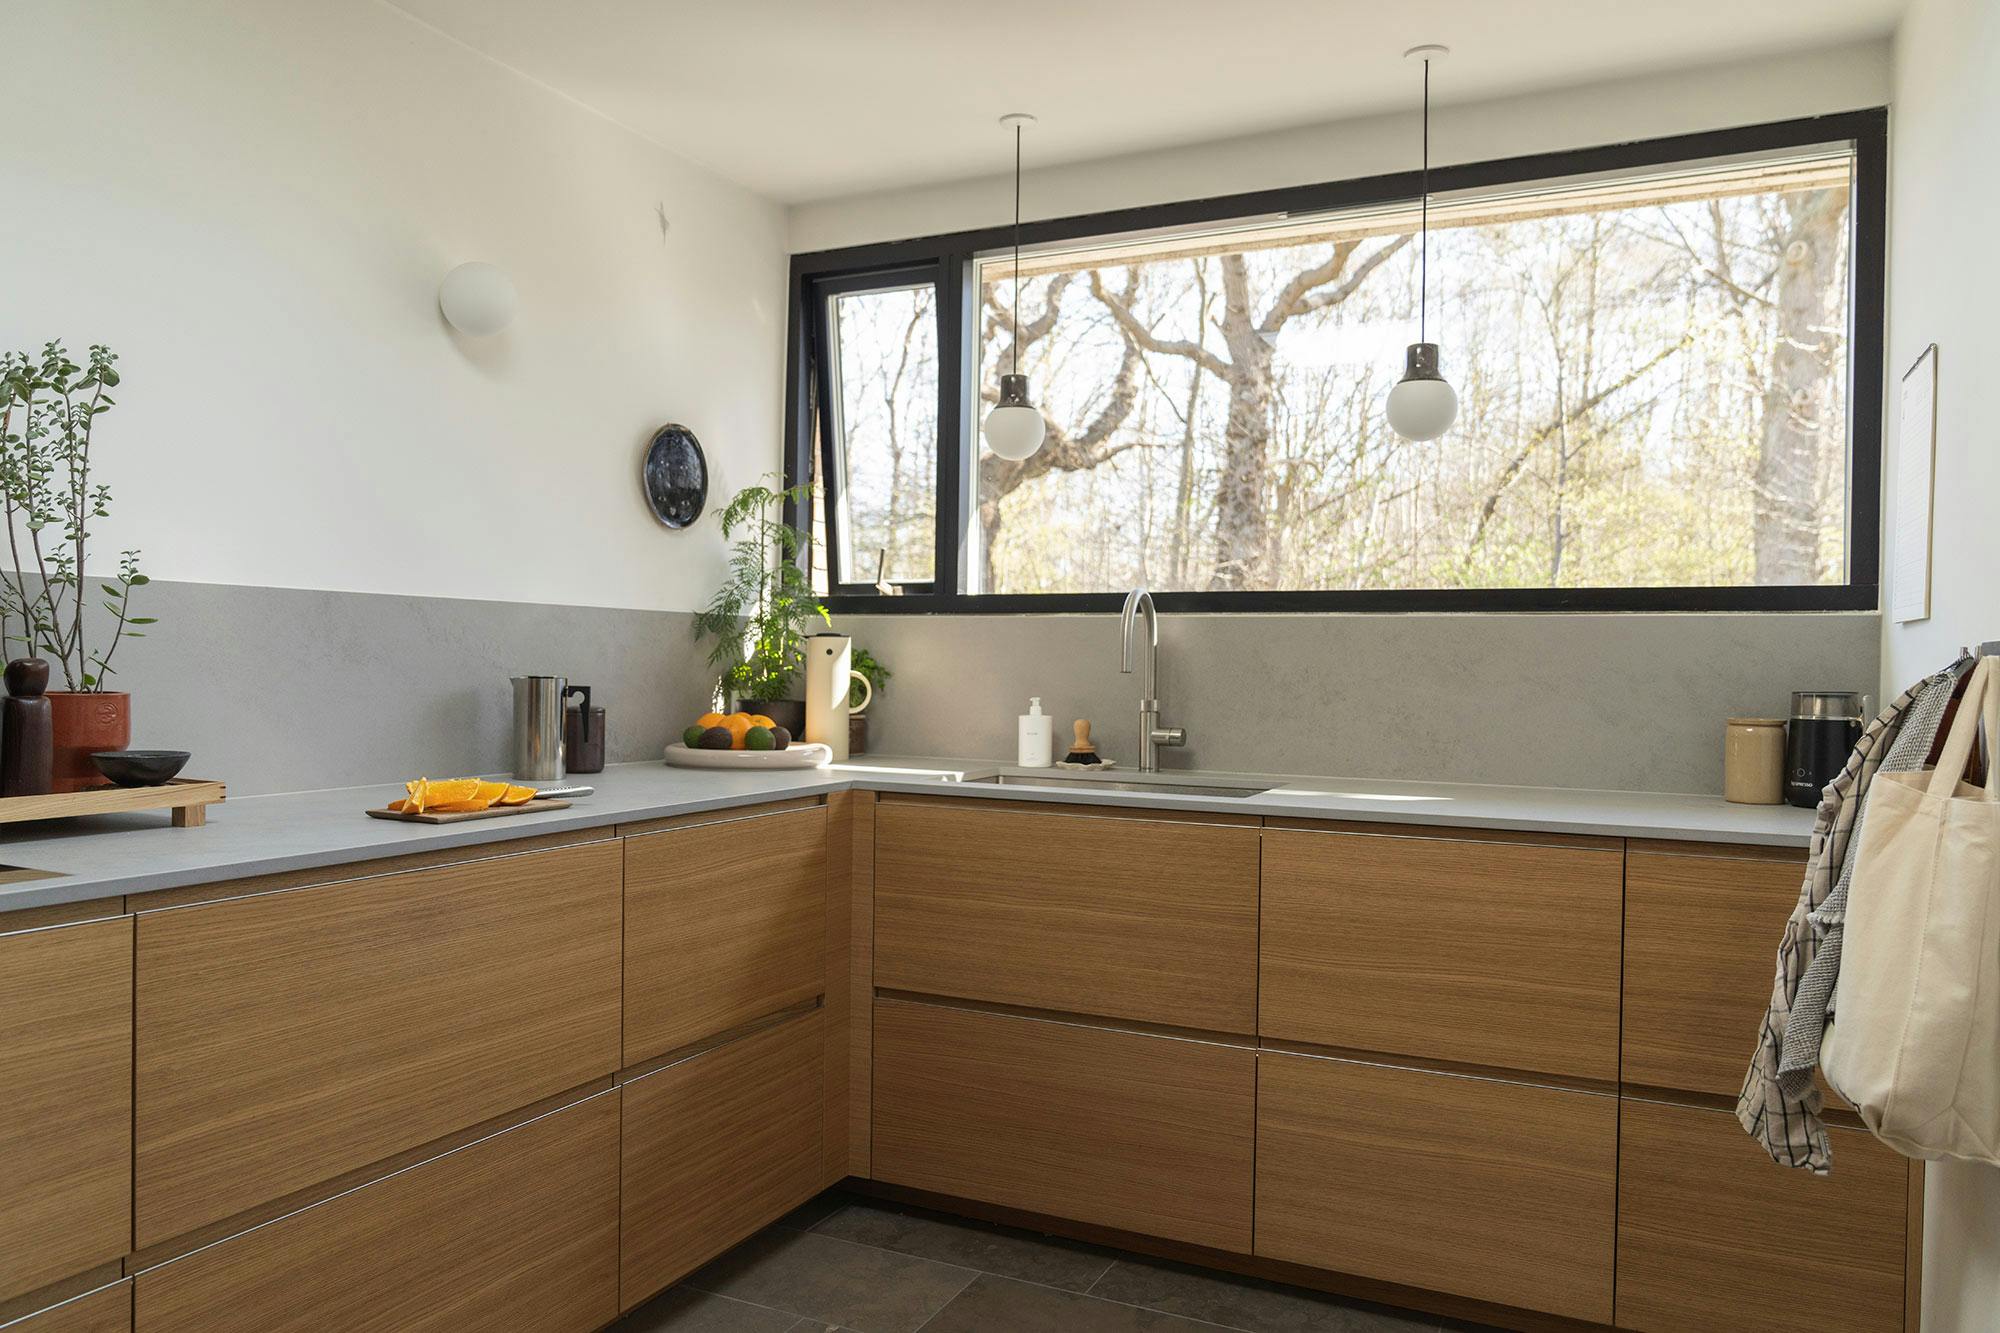 Numero immagine 38 della sezione corrente di DKTN Arga creates an elegant atmosphere in this open plan kitchen with a minimalist approach di Cosentino Italia